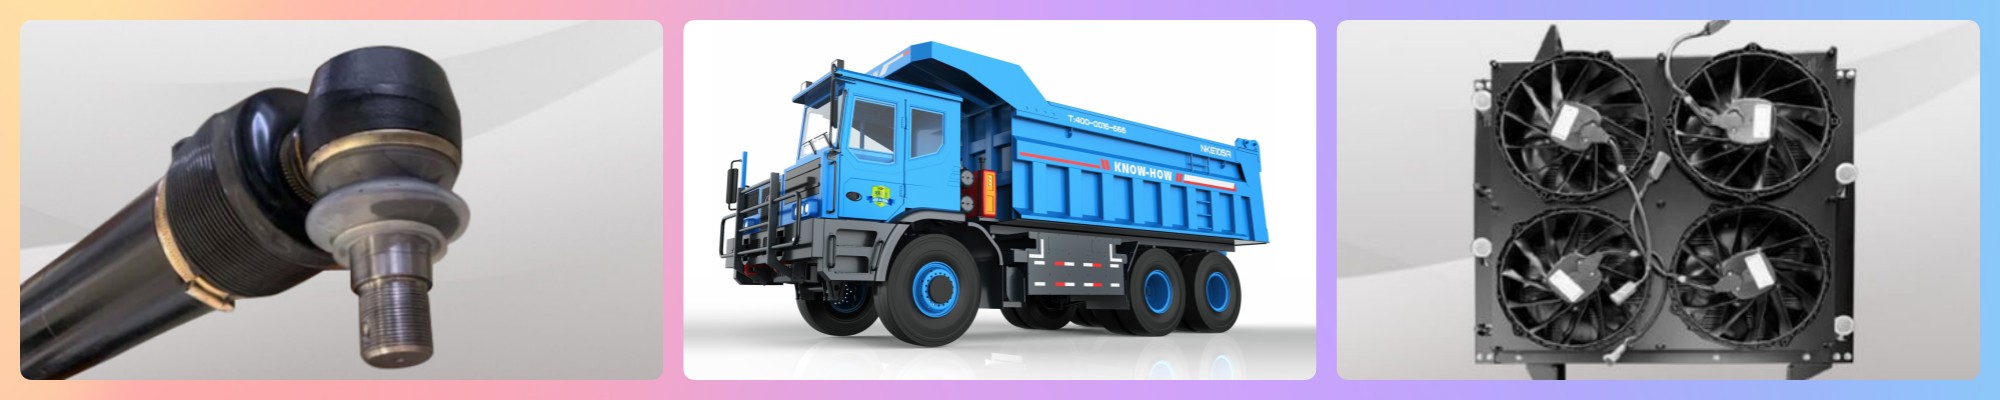 NKE90C 350kwh electric dump truck